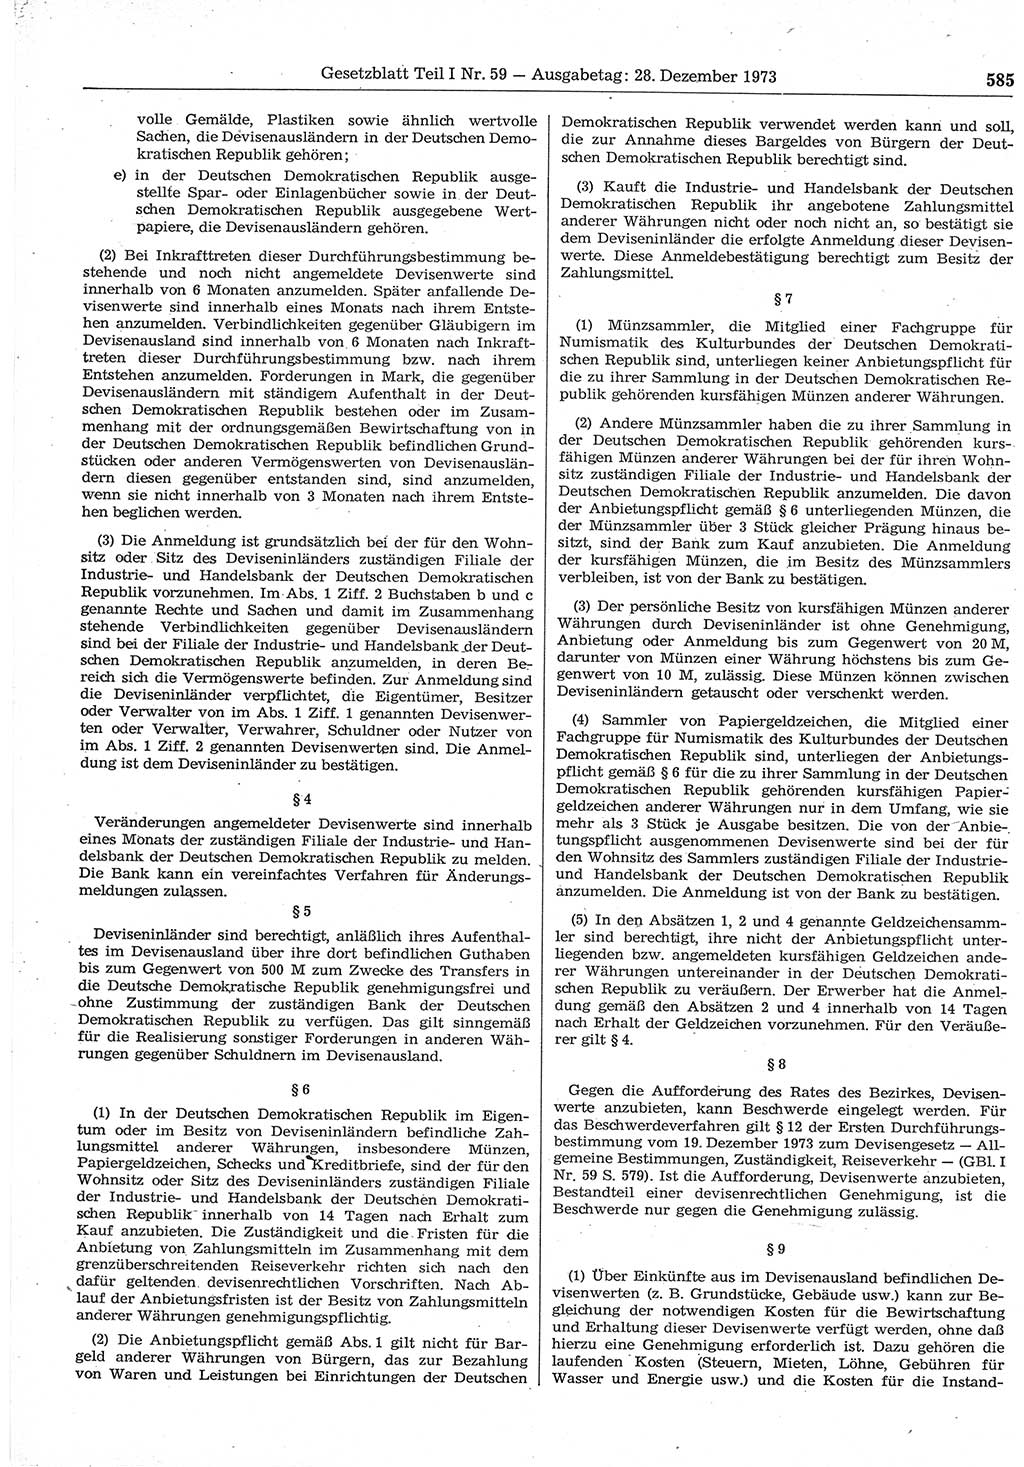 Gesetzblatt (GBl.) der Deutschen Demokratischen Republik (DDR) Teil Ⅰ 1973, Seite 585 (GBl. DDR Ⅰ 1973, S. 585)